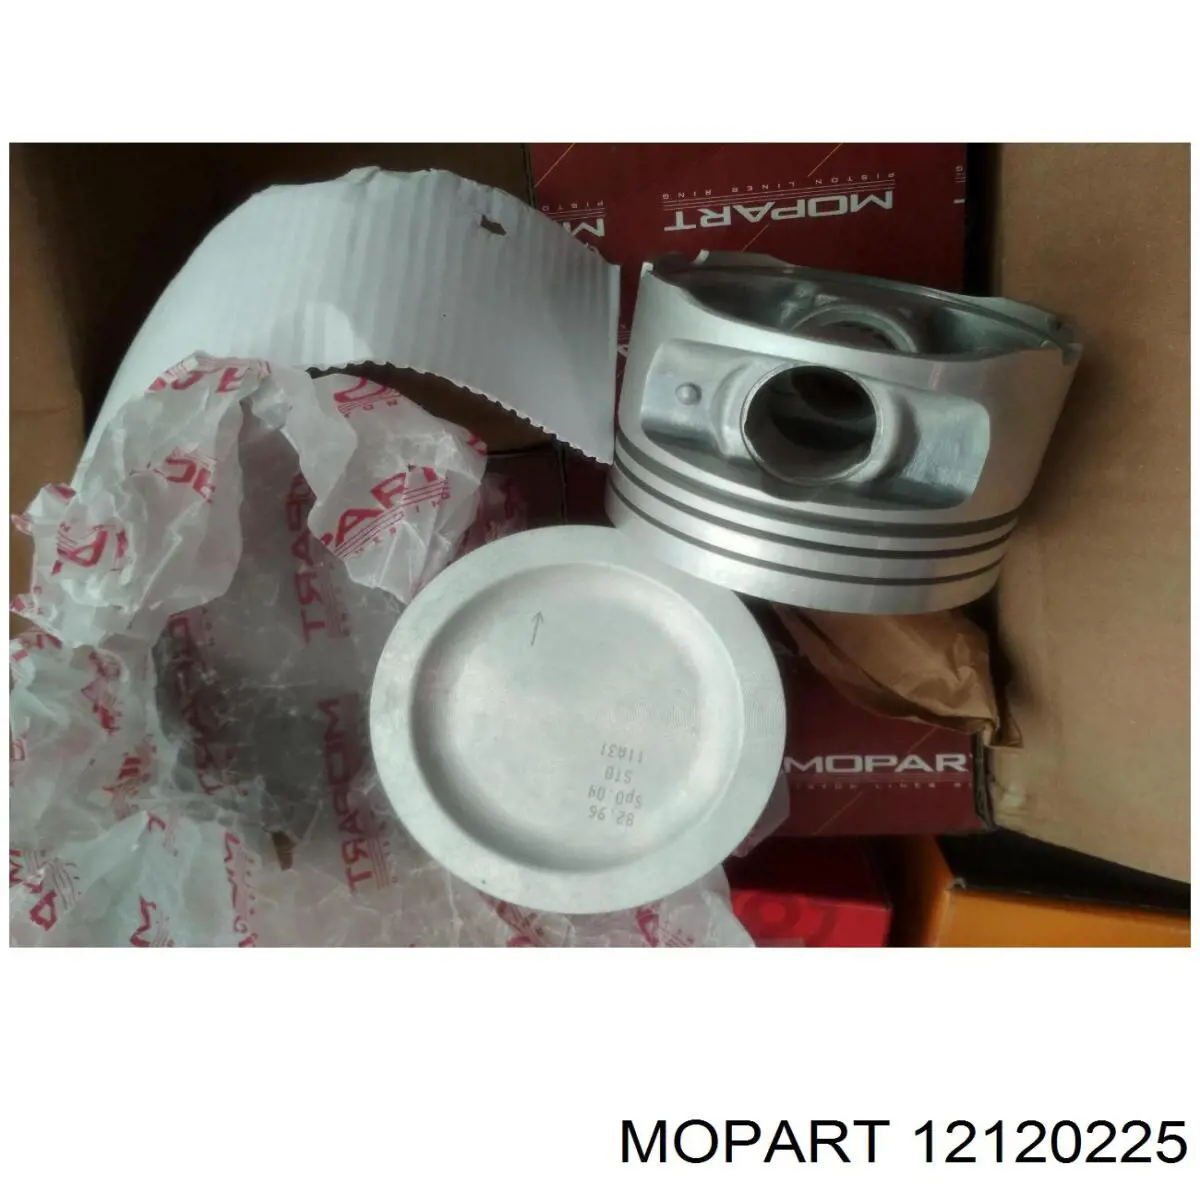  12120225 Mopart вкладыши коленвала шатунные, комплект, 1-й ремонт (+0,25)